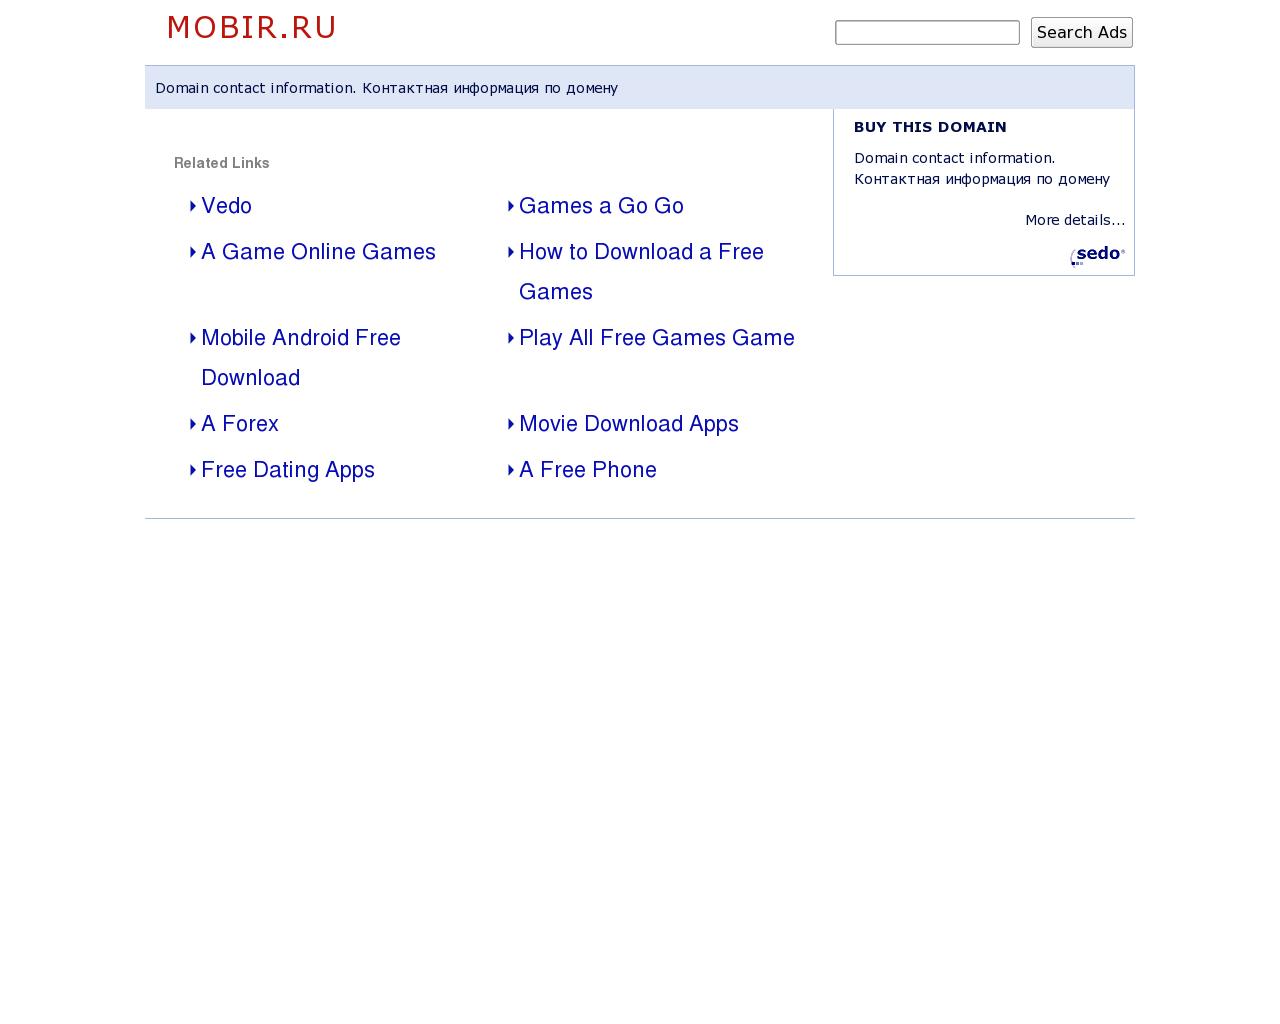 Изображение сайта mobir.ru в разрешении 1280x1024